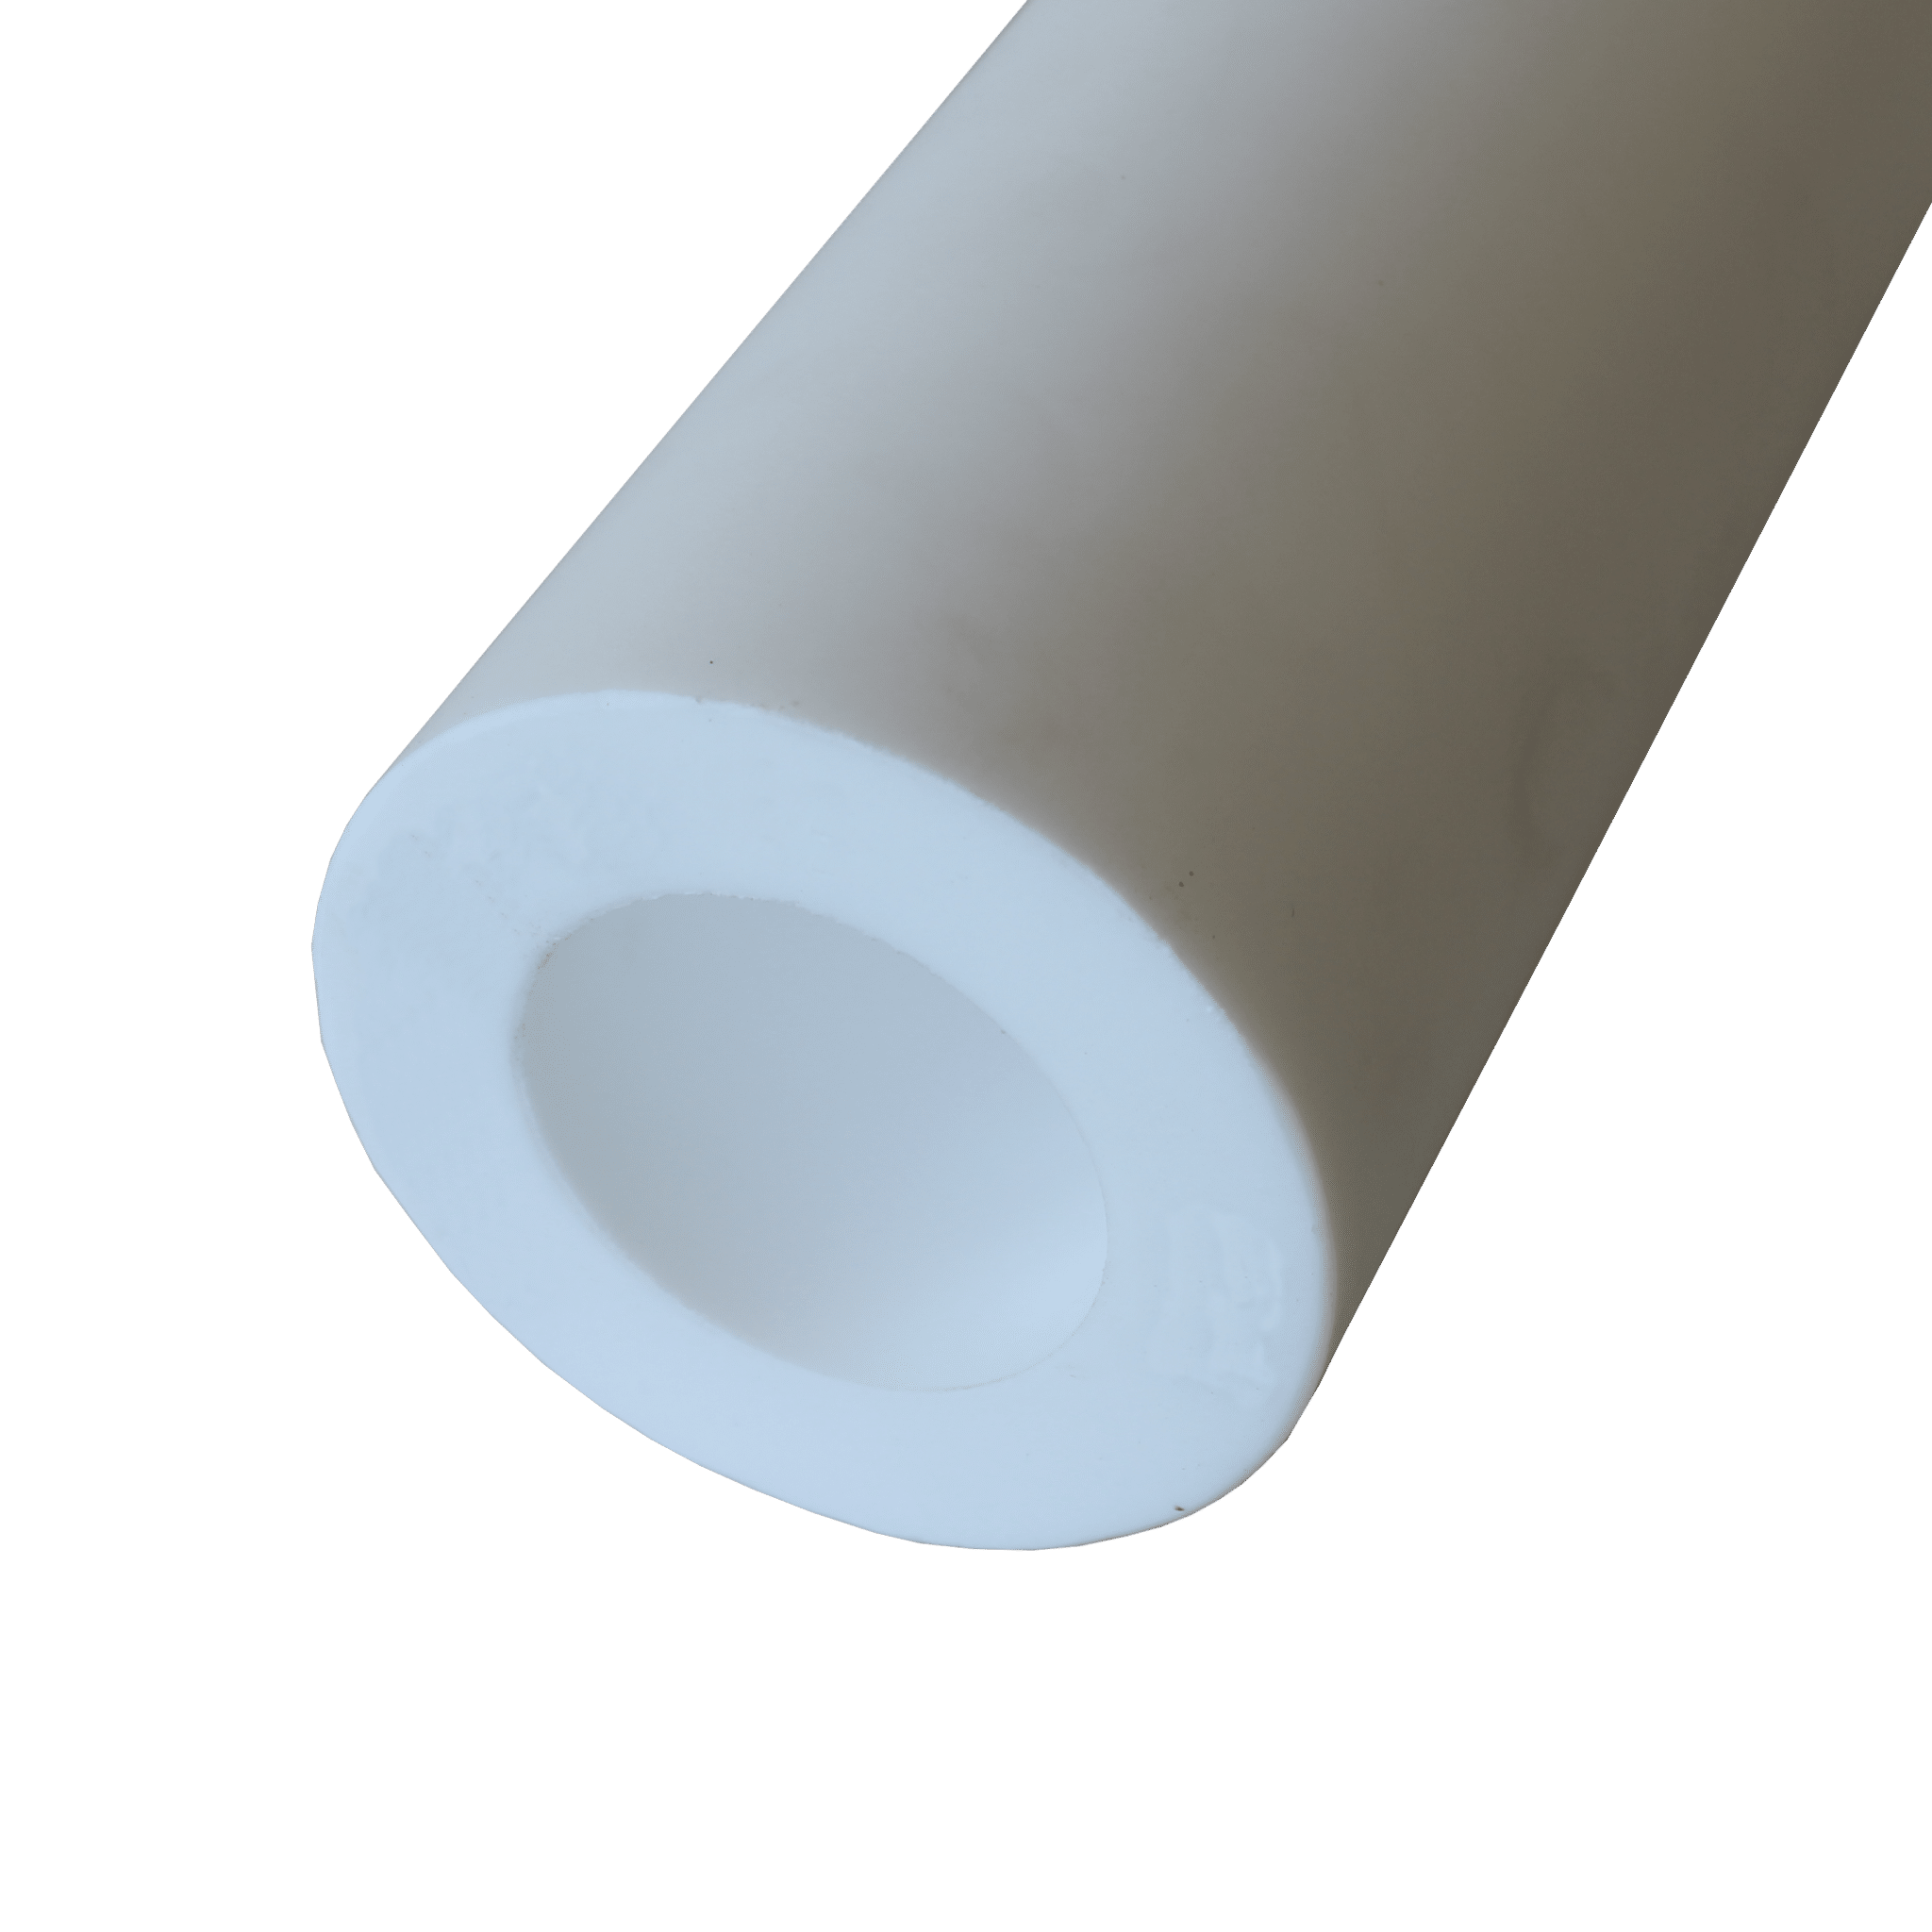 ptfe/Teflon Tube - LEP Engineering Plastics